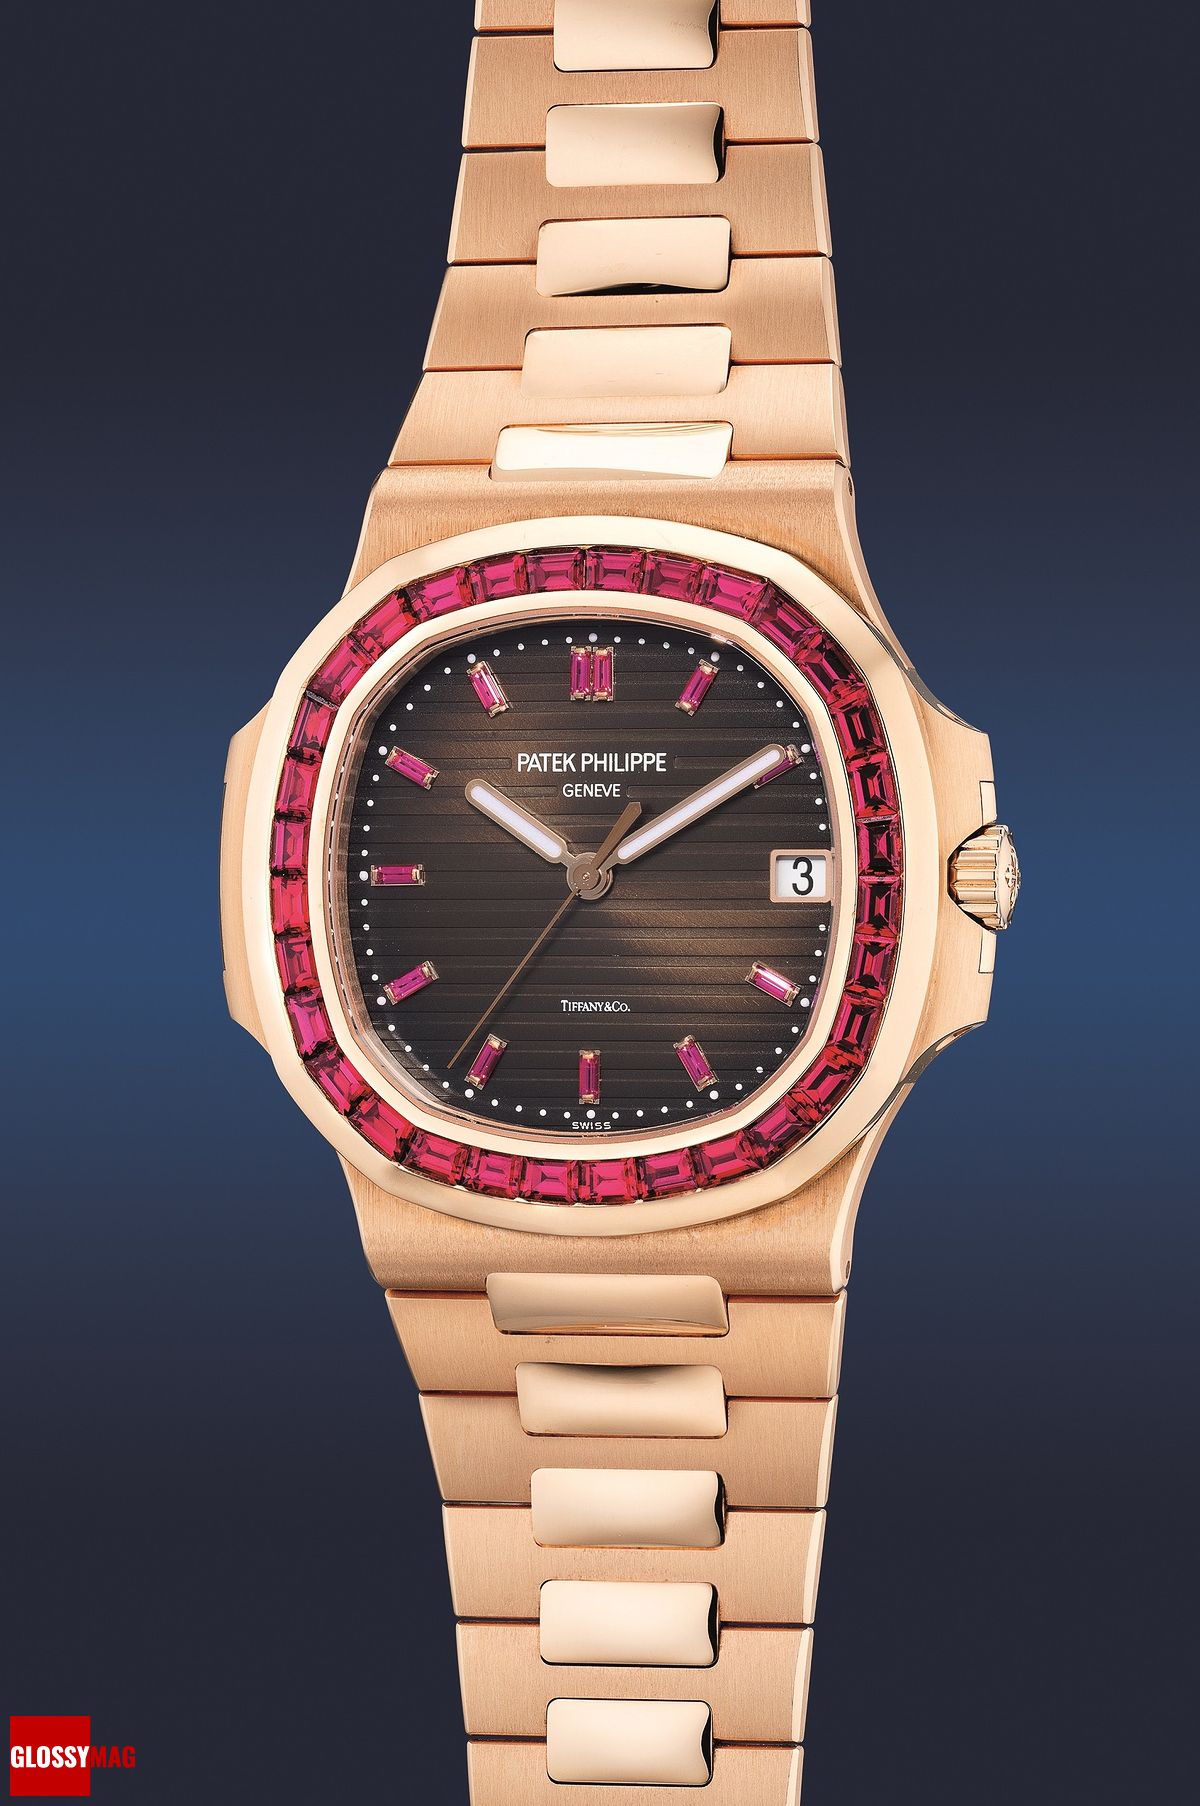 Часы Patek Philippe Nautilus Ref. 5723/112R-001 в корпусе из розового золота с ободком, украшенным рубинами багетной огранки, фото 1